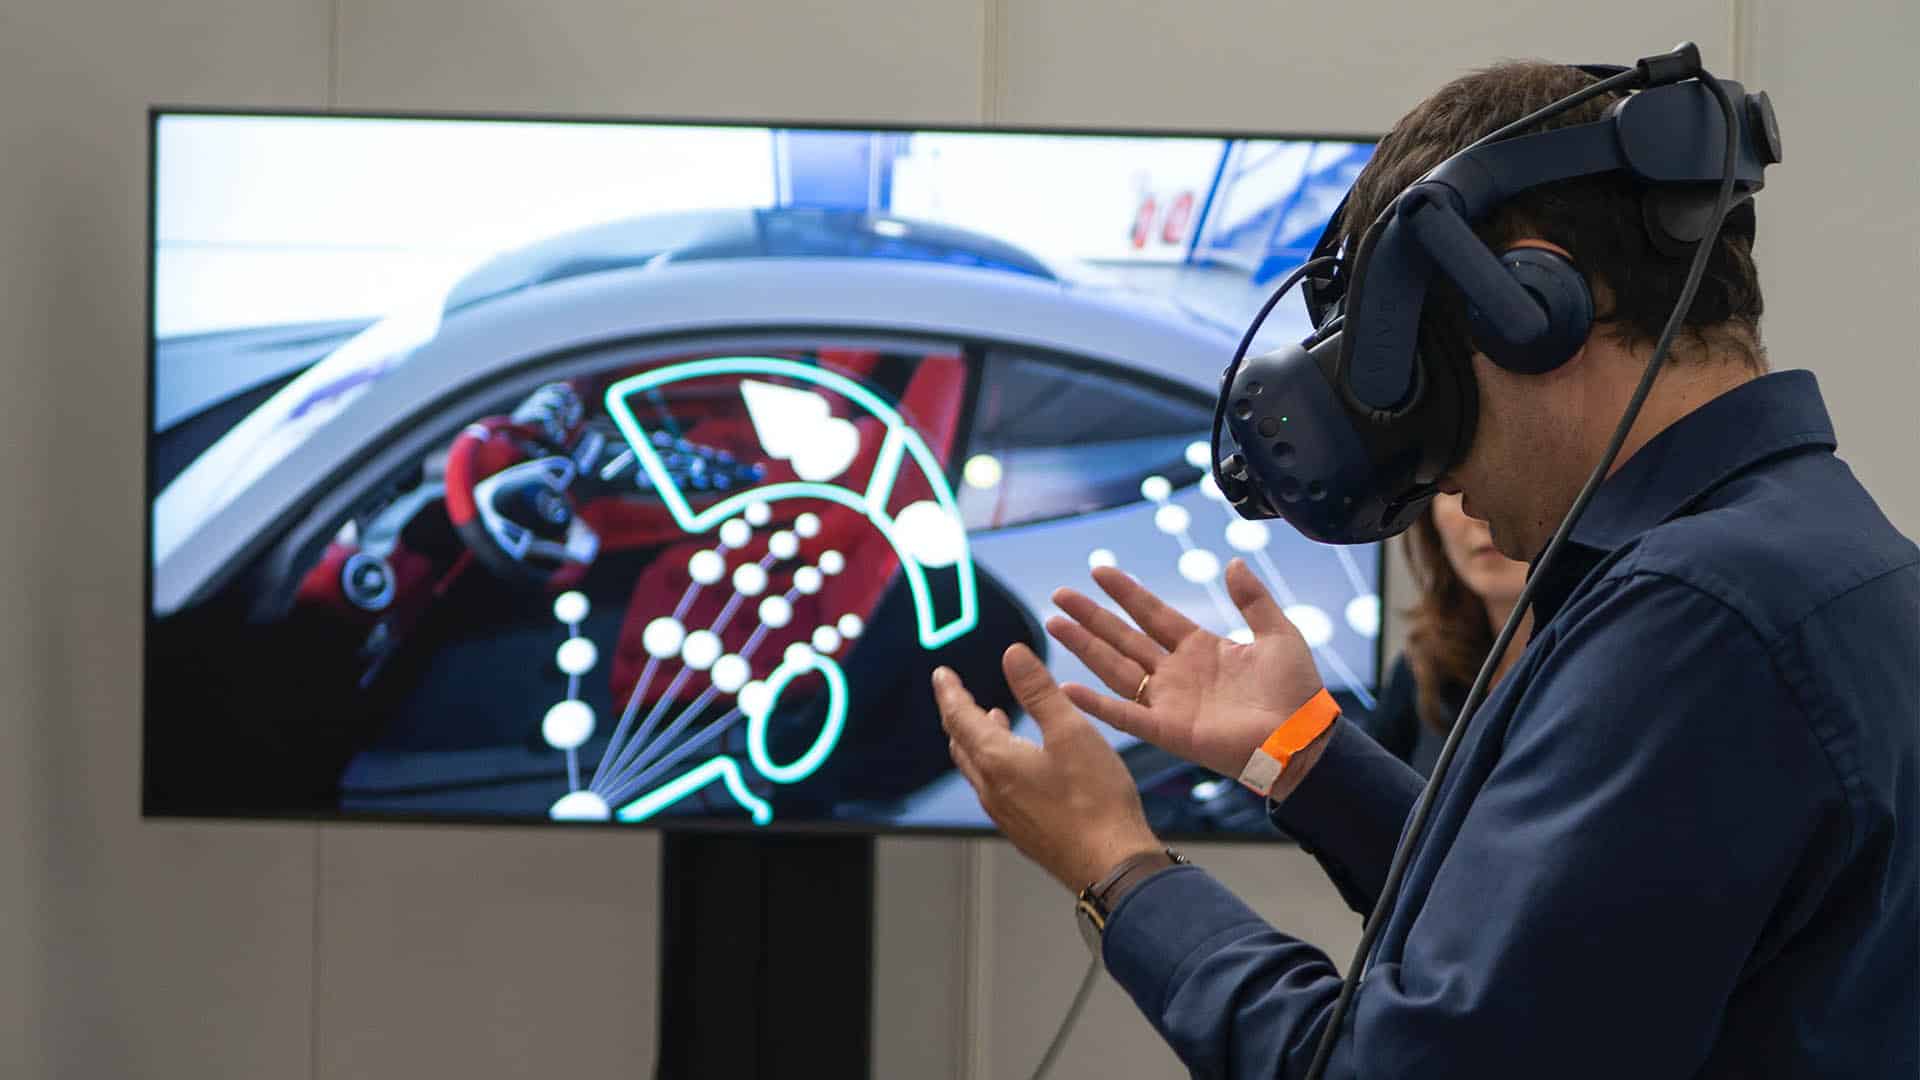 (VR brillen bieden nieuwe en interessante uitzichten. ( Image source: XR Expo)